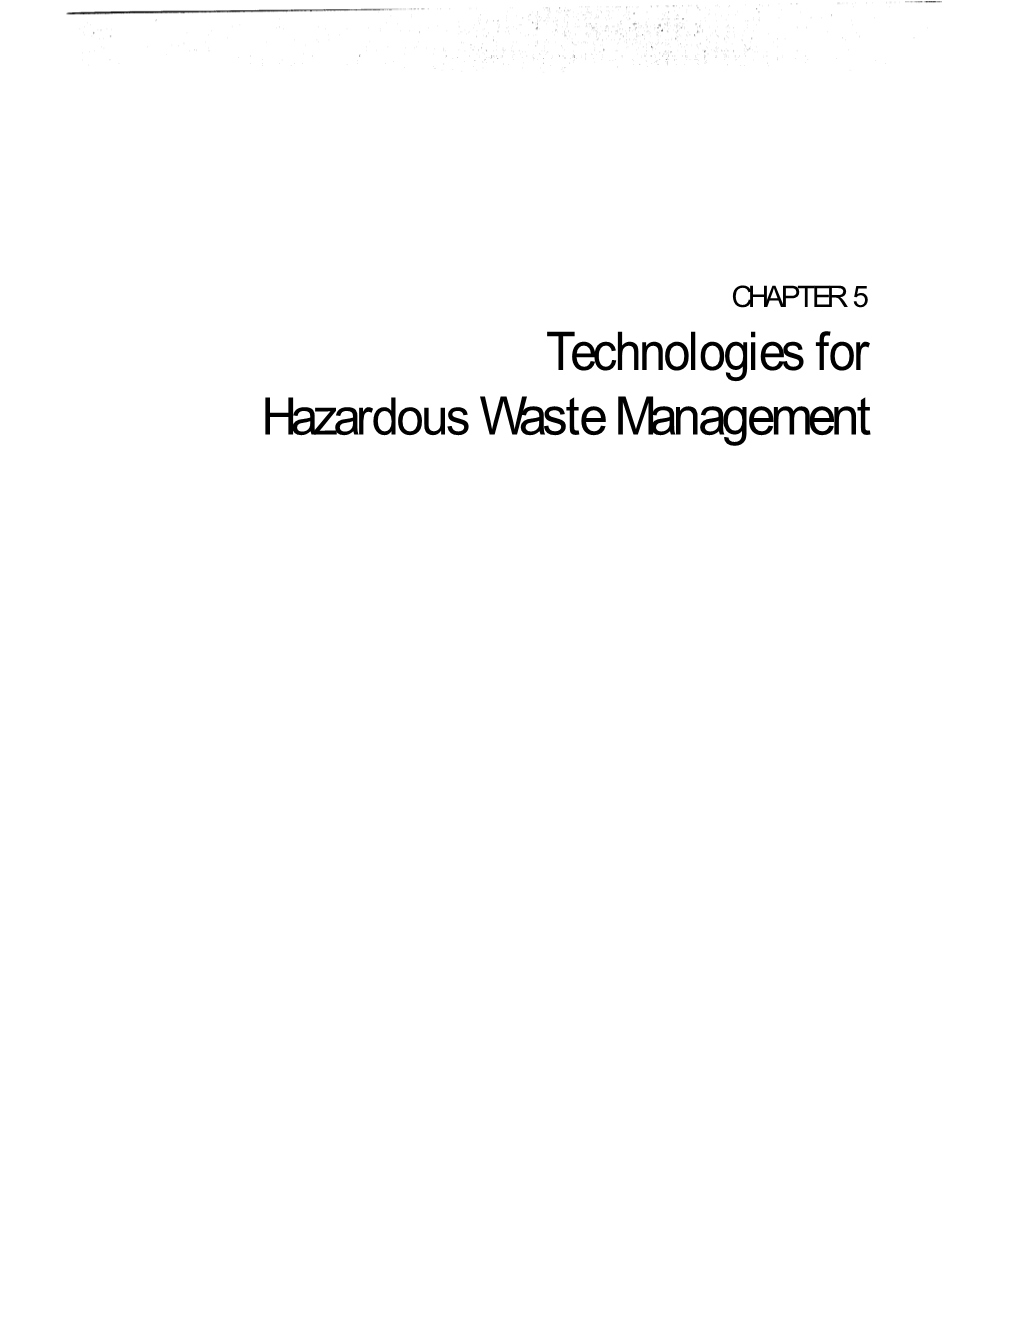 Technologies for Hazardous Waste Management Contents